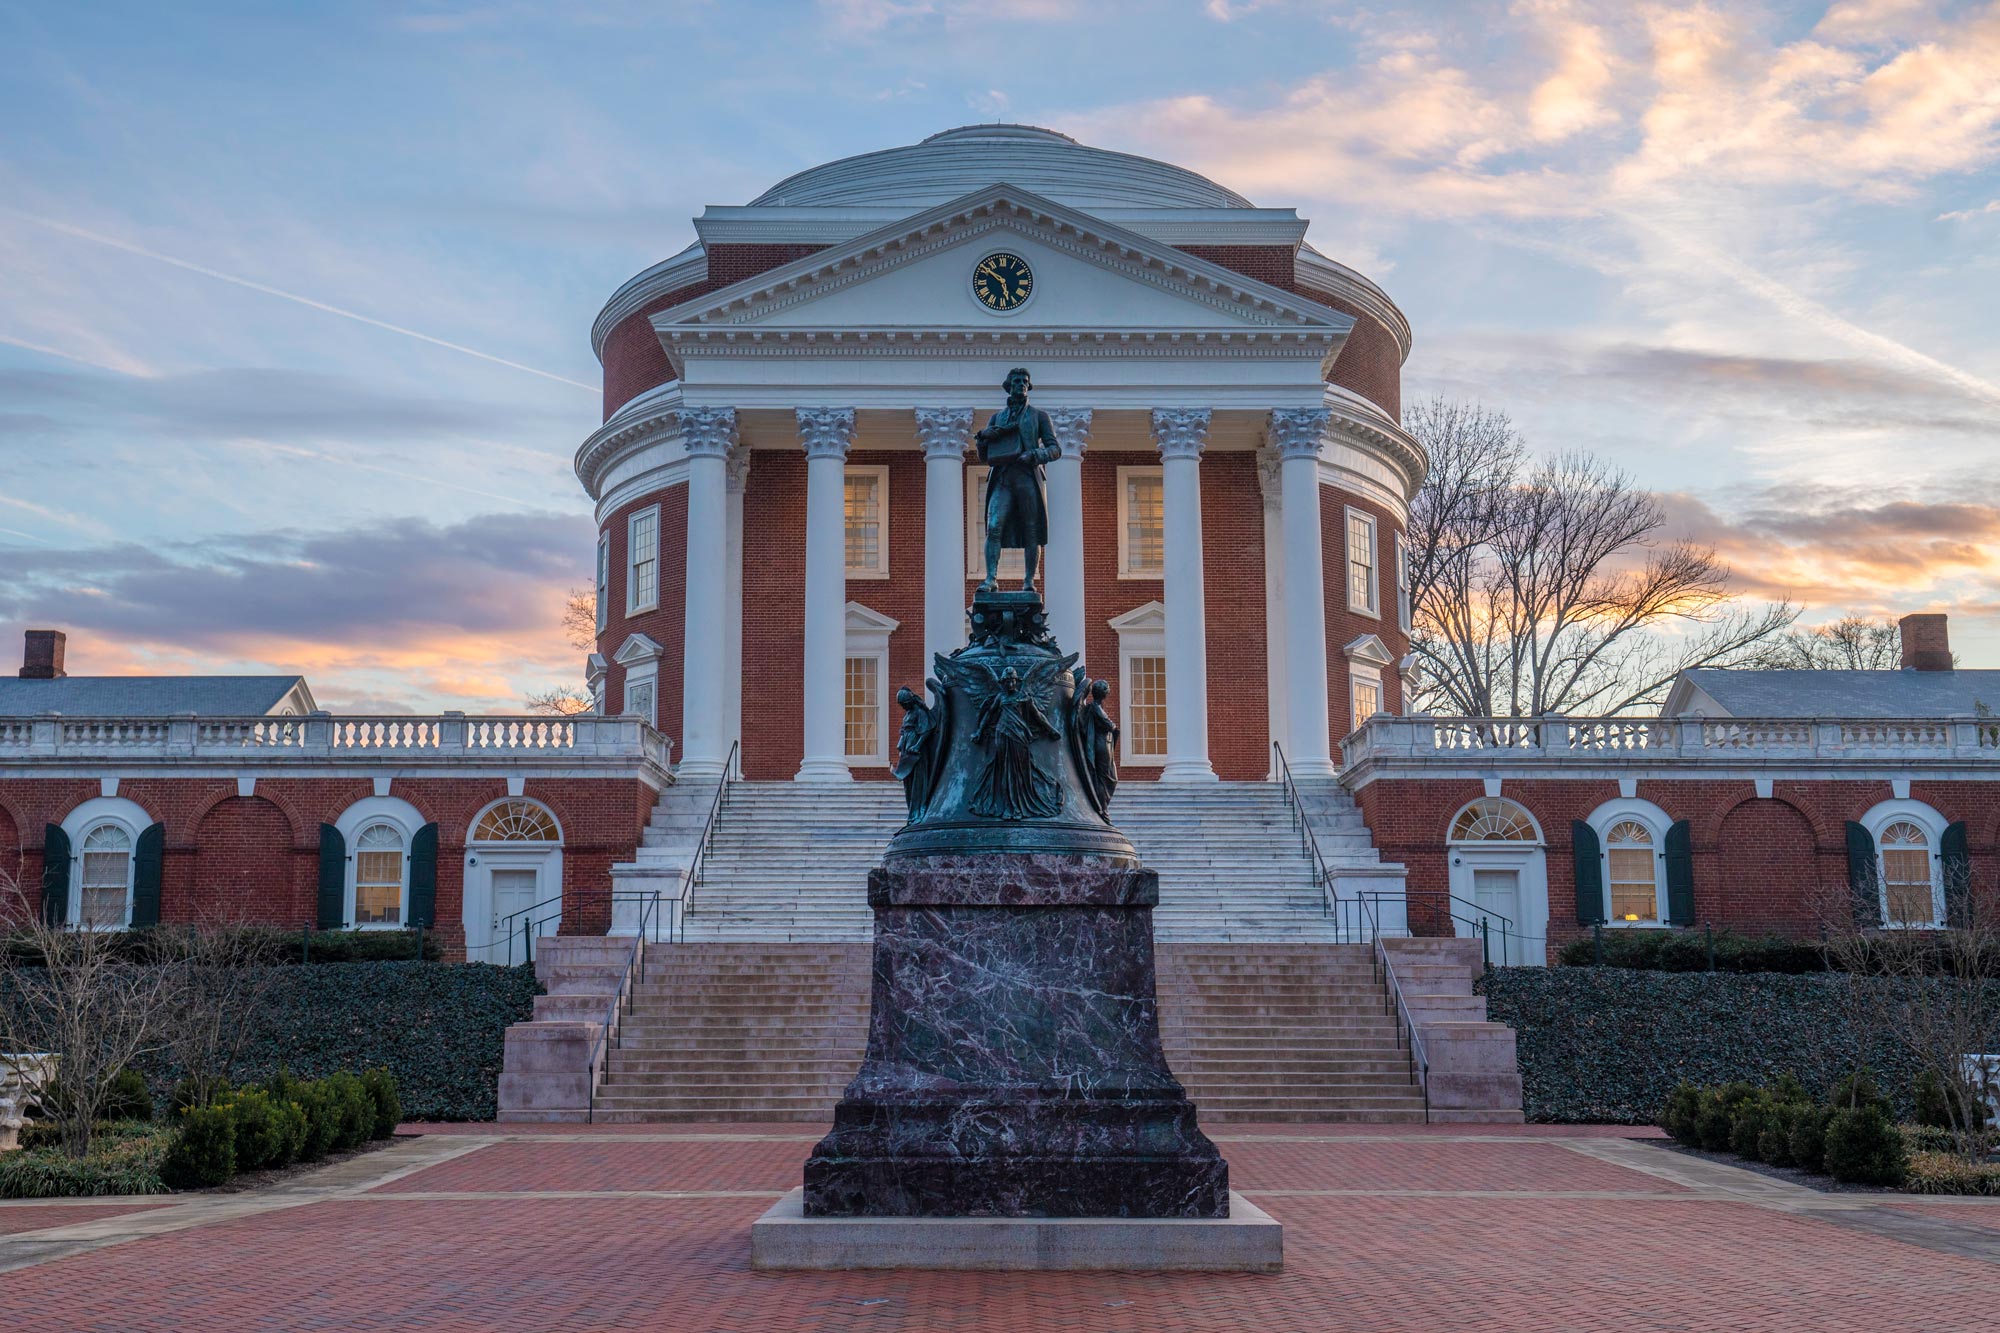 The Rotunda with Thomas Jefferson Statue